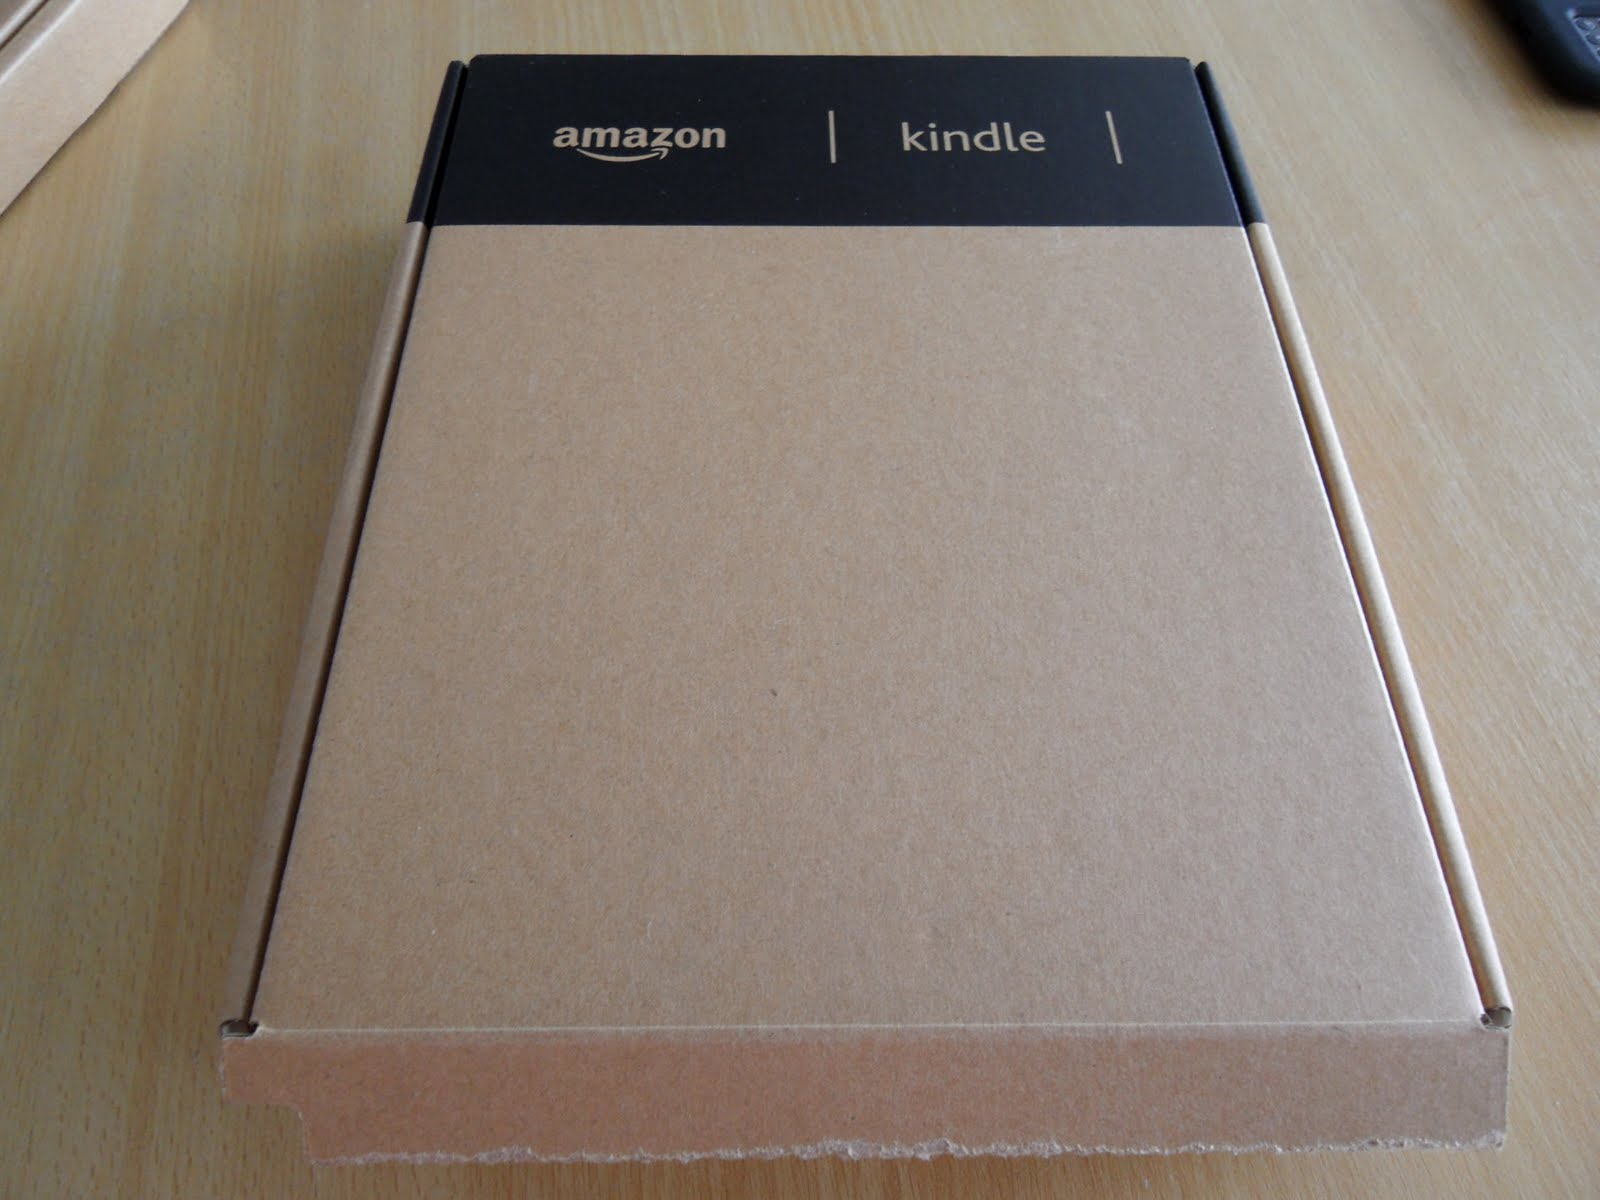 Amazon Kindle Box